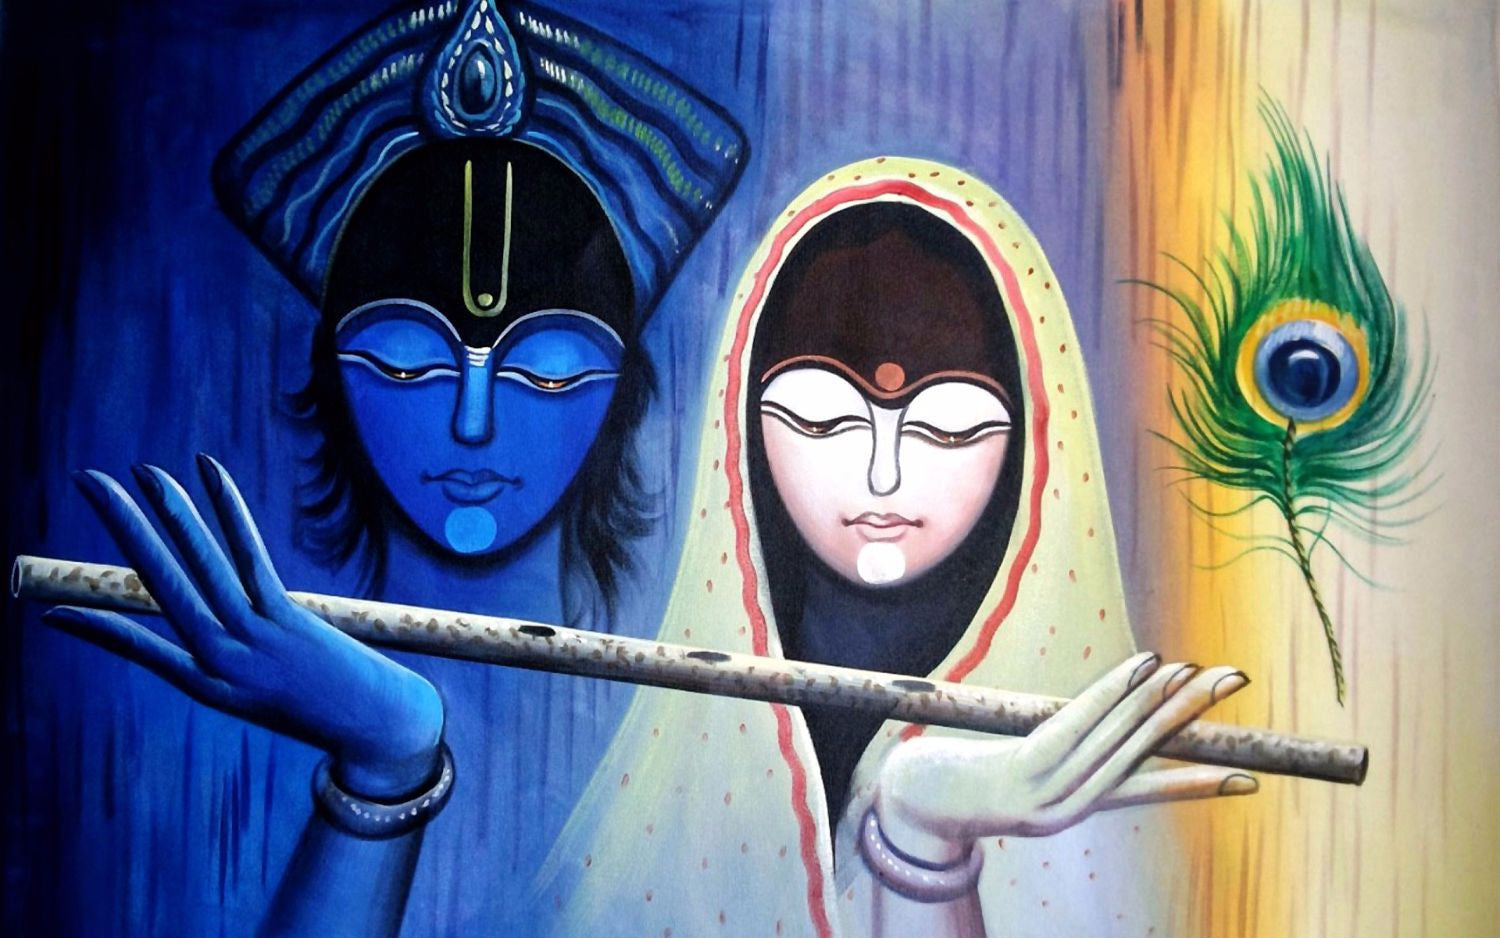 Indian Art - Radha Krishna Painting - Posters by Raghuraman | Buy ...